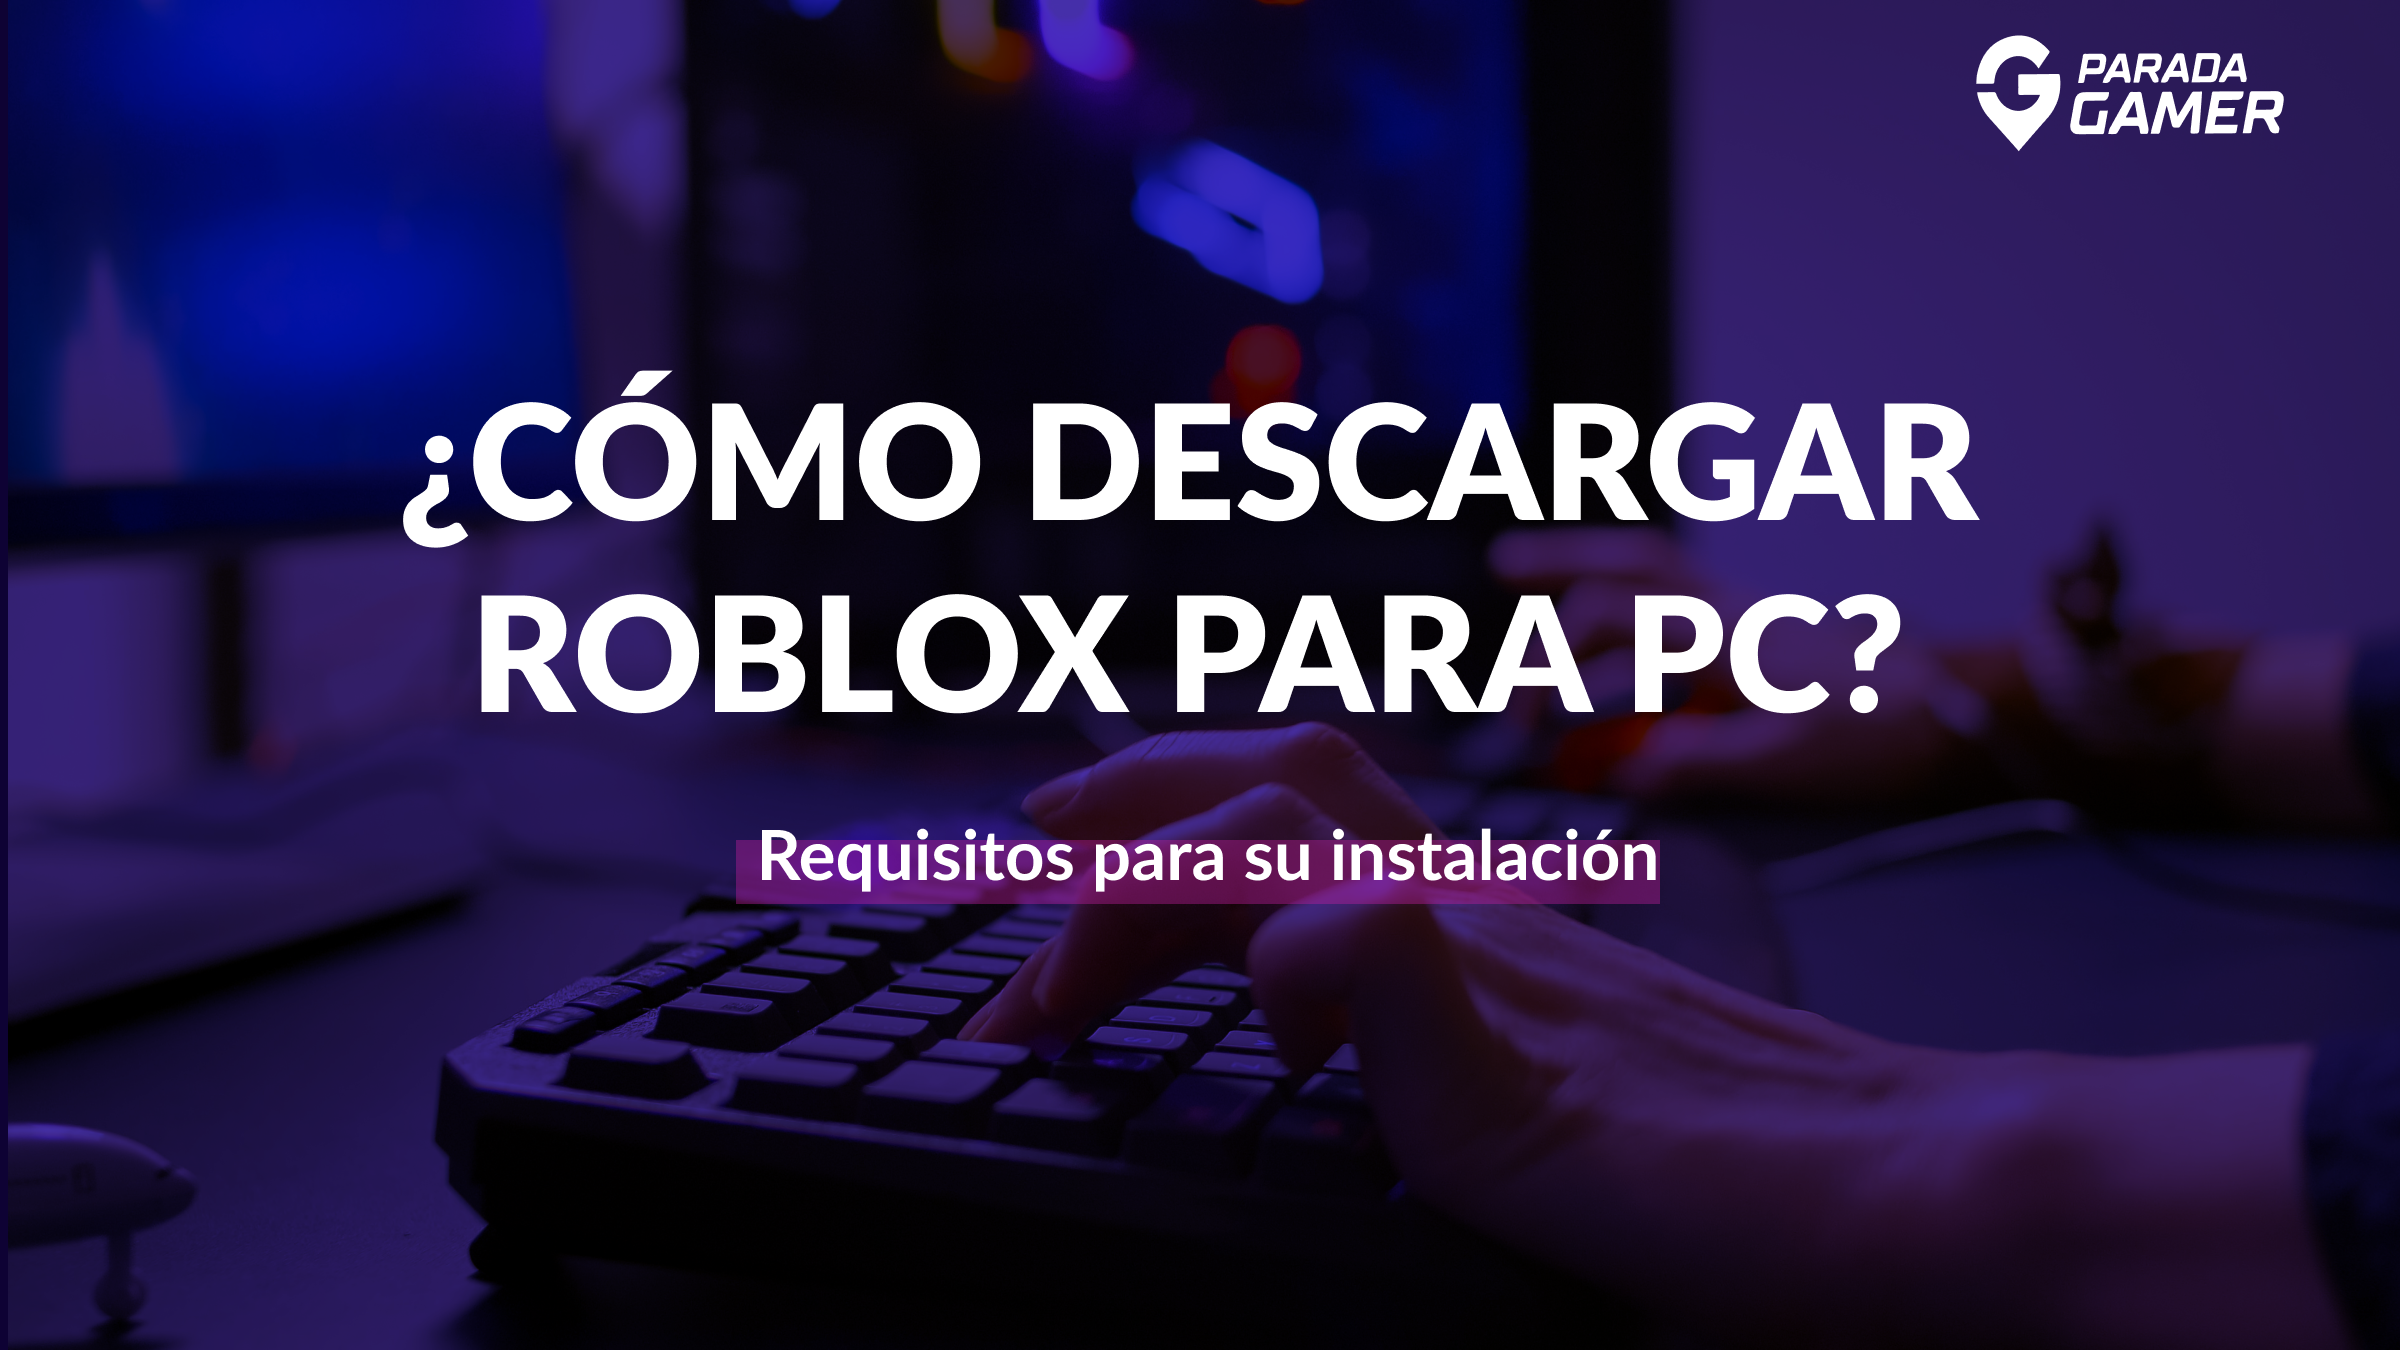 Cómo descargar roblox para PC? - Parada Gamer